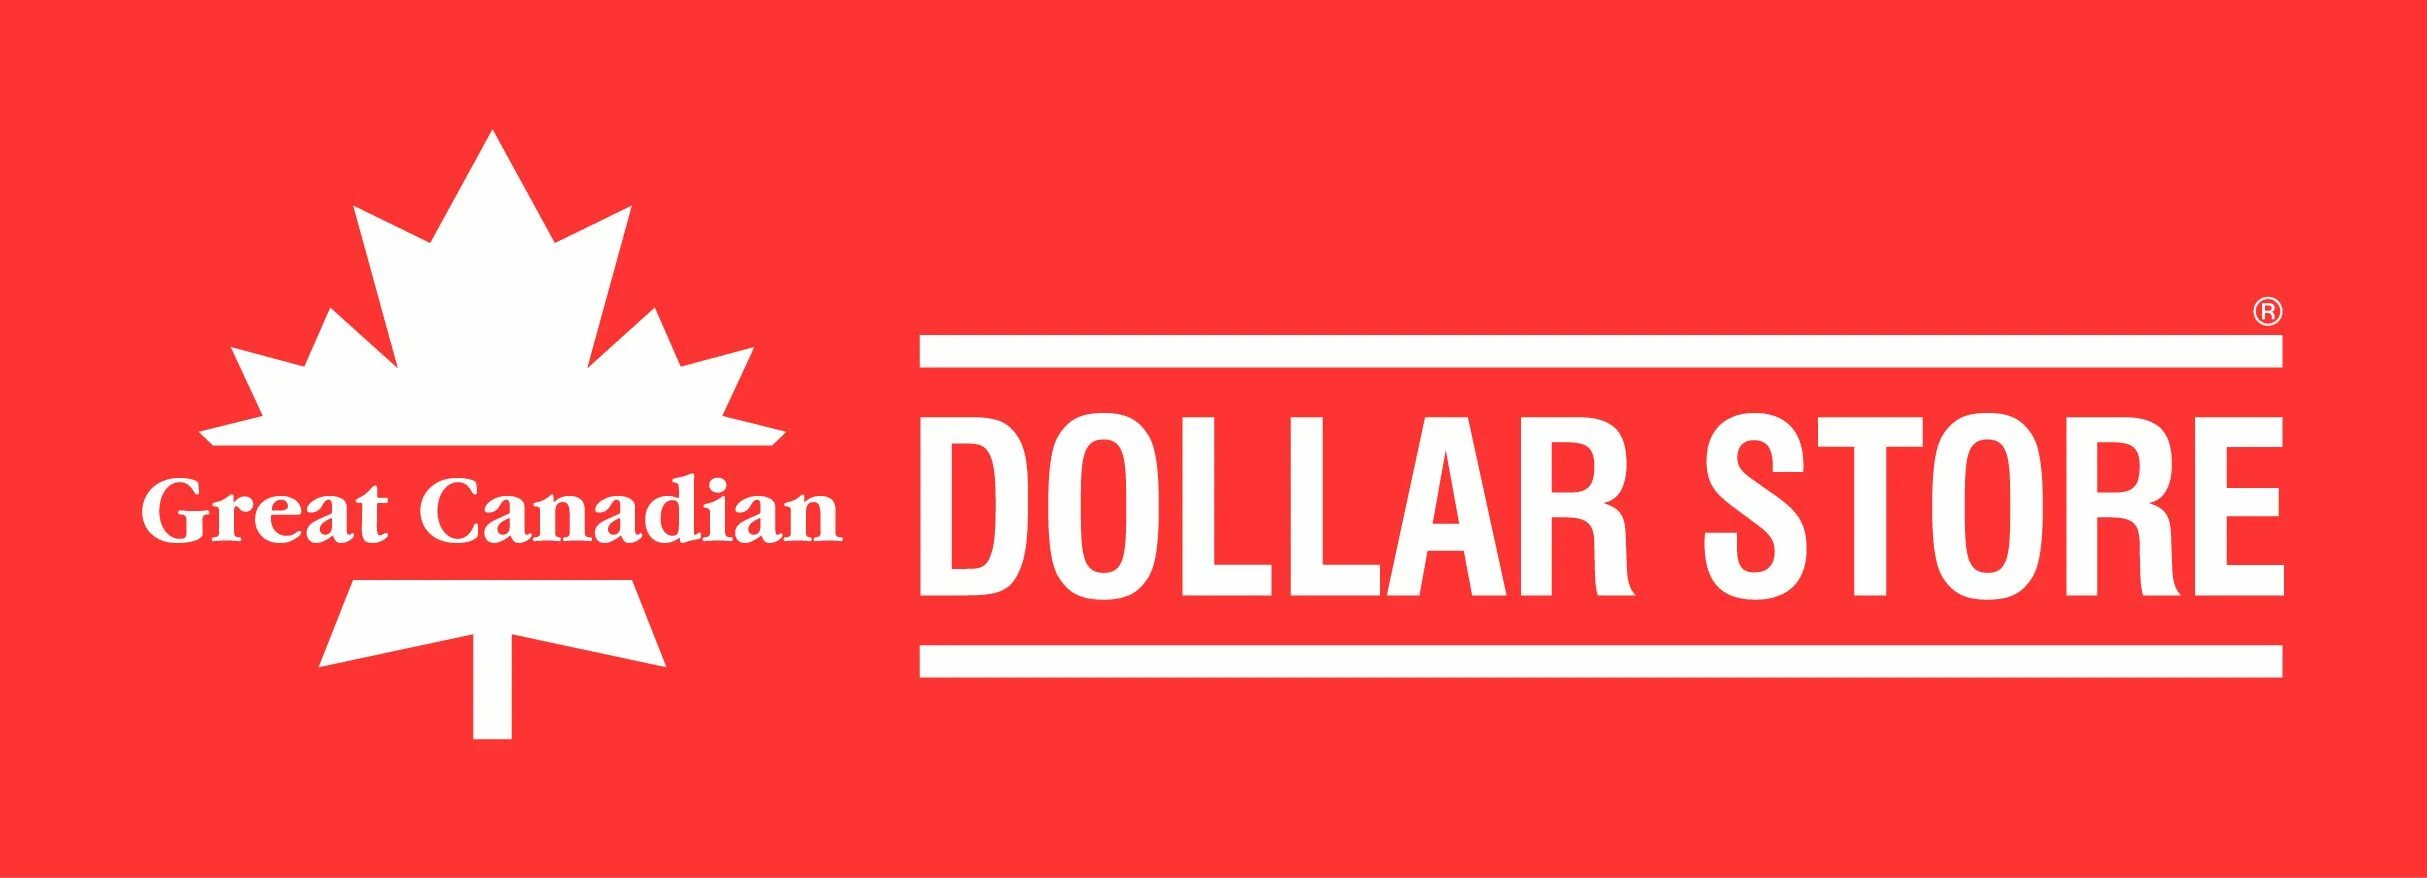 Канада стор. Магазин Canadian. Dollar Store. Лого долларового магазина. Dollar Store logo.